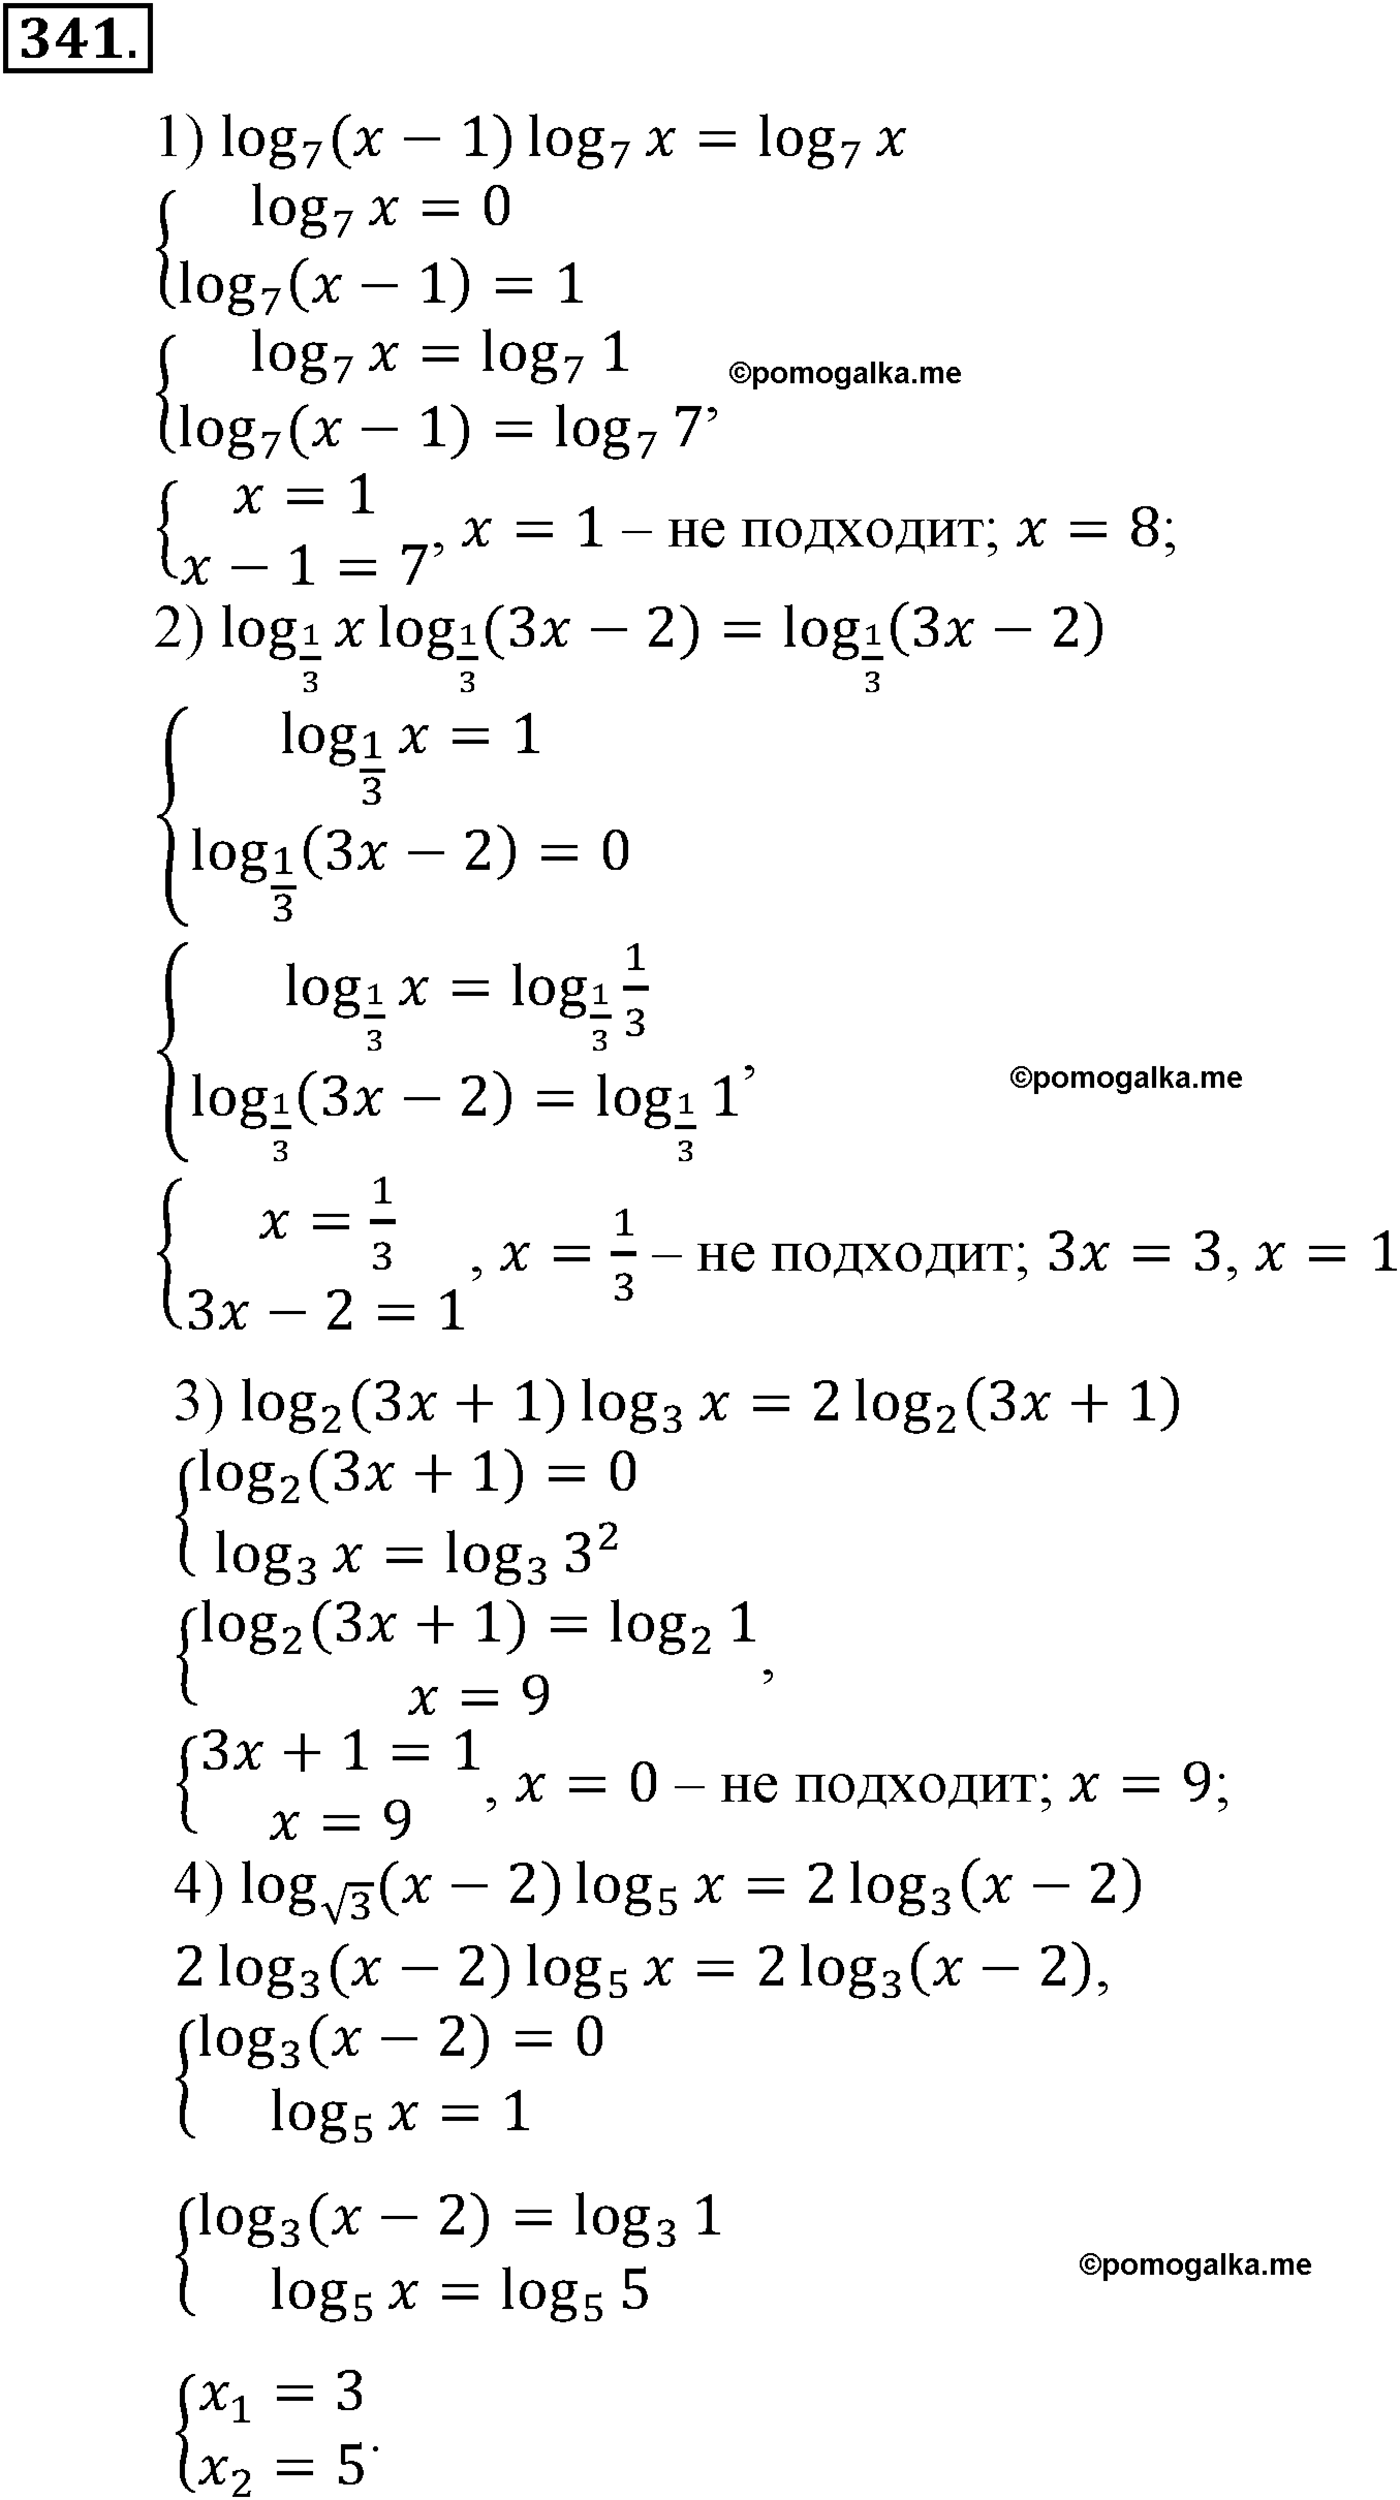 разбор задачи №341 по алгебре за 10-11 класс из учебника Алимова, Колягина